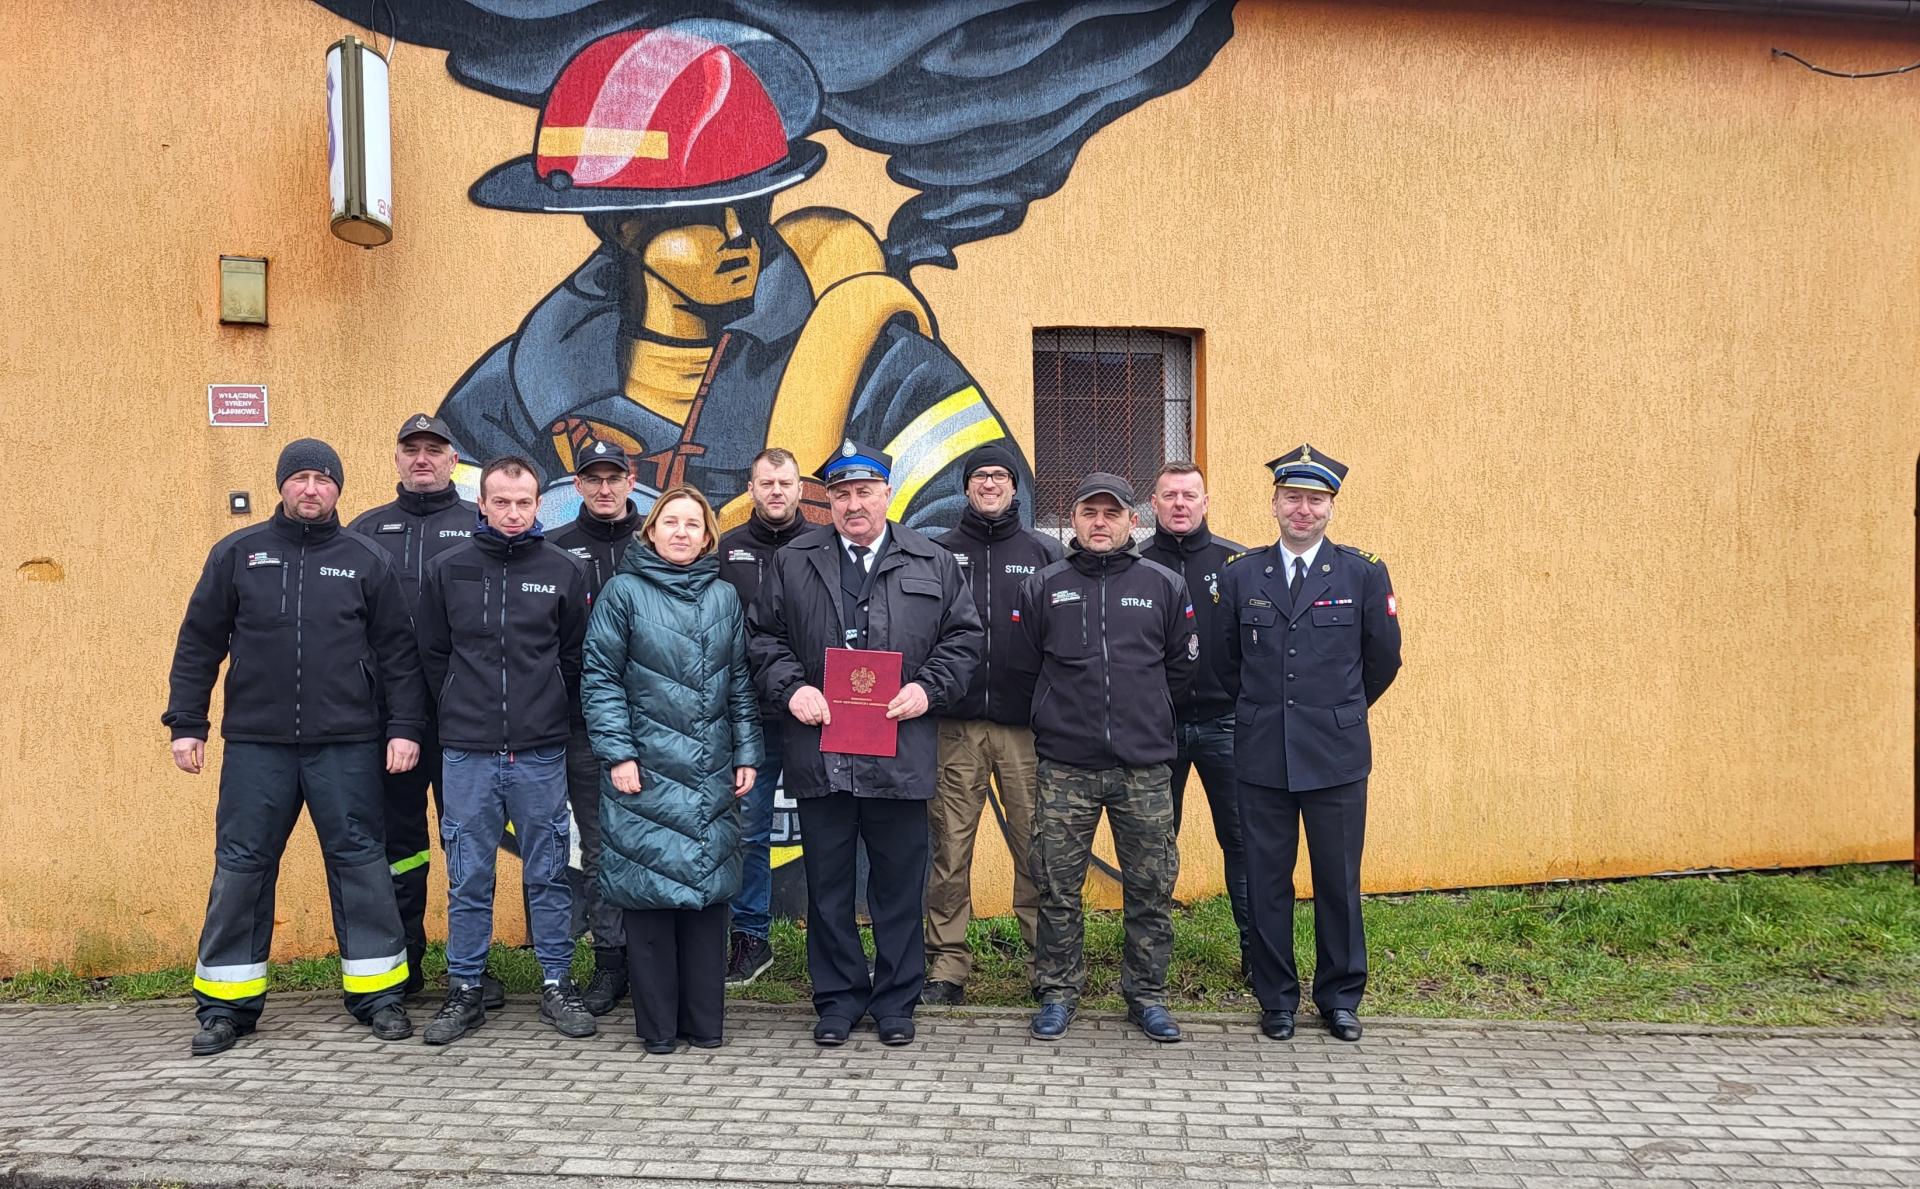 Strażacy przed strażnicą, Pierwsza od lewej wiceburmistrz Dębna Joanna Stąsiek - Janicka 